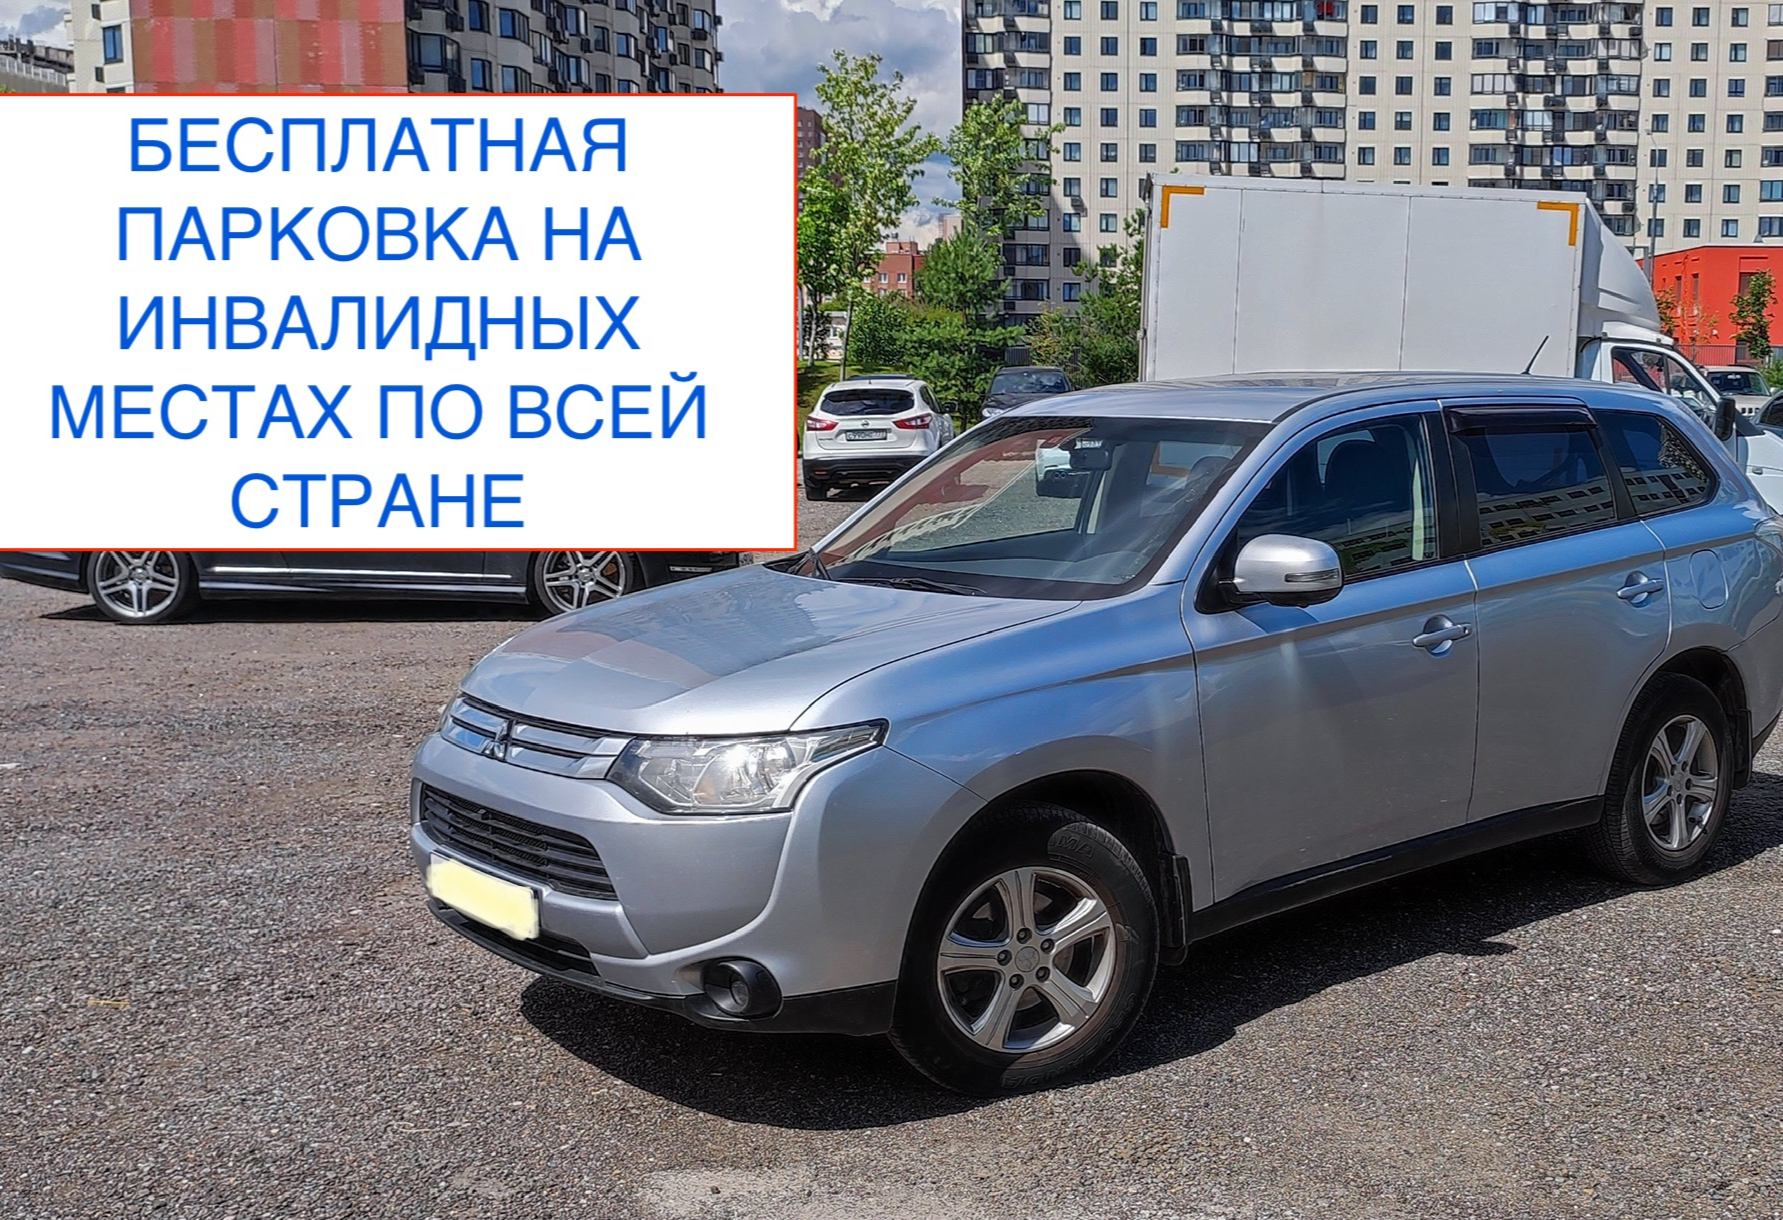 Аренда mitsubishi outlander стандарт класса 2013 года в городе Москва Текстильщики от 3520 руб./сутки, полный привод, двигатель: бензин, объем 2 литра, ОСАГО (Впишу в полис), без водителя, недорого - RentRide